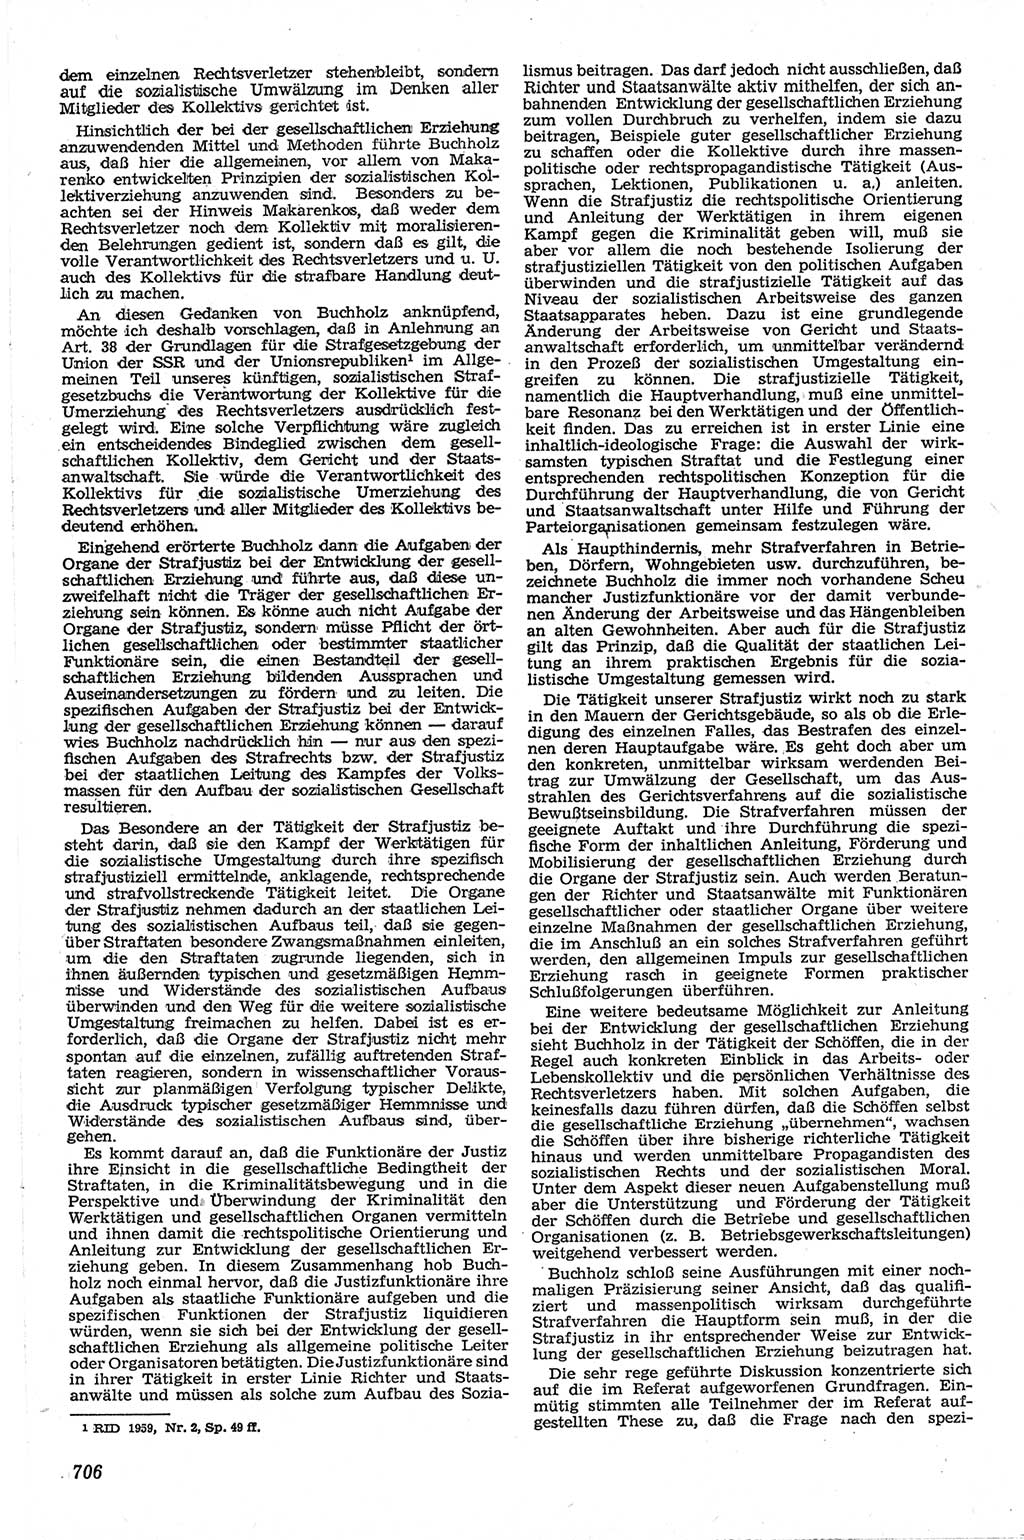 Neue Justiz (NJ), Zeitschrift für Recht und Rechtswissenschaft [Deutsche Demokratische Republik (DDR)], 13. Jahrgang 1959, Seite 706 (NJ DDR 1959, S. 706)